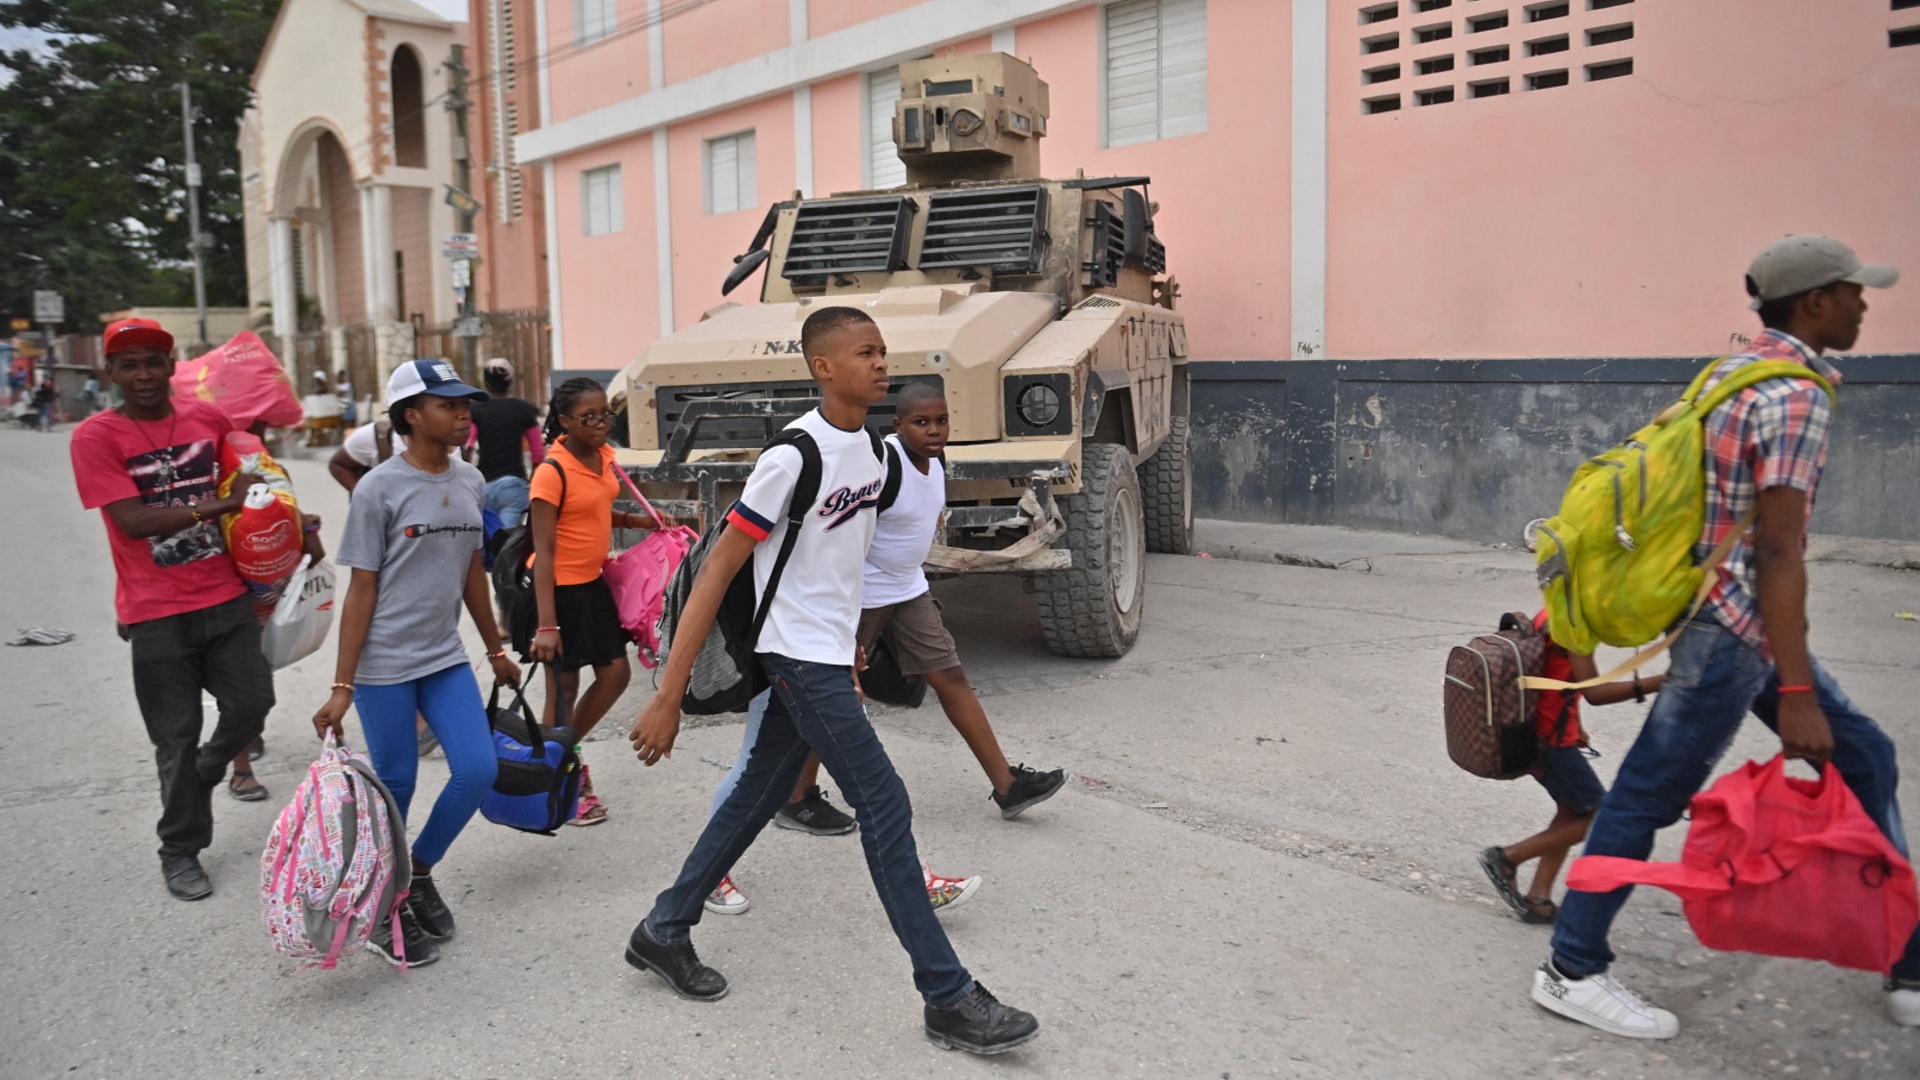 Гаитяне ищут защиты от банд у полицейских участков